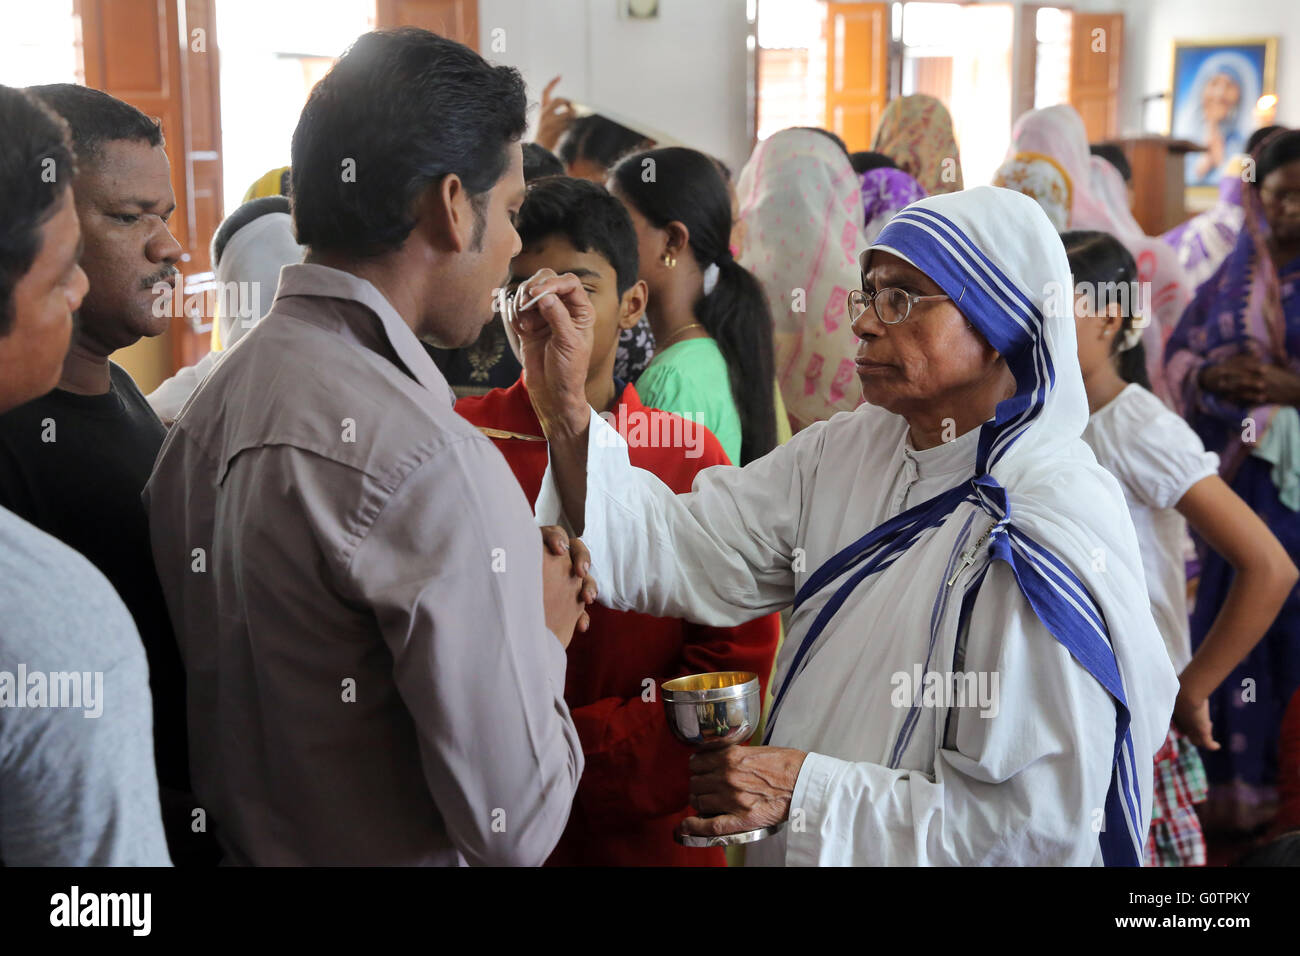 Teresa sorella (Missionari della Carità) condivide l Eucaristia durante un cattolico romano domenica a Messa in una piccola chiesa di Calcutta, in India Foto Stock